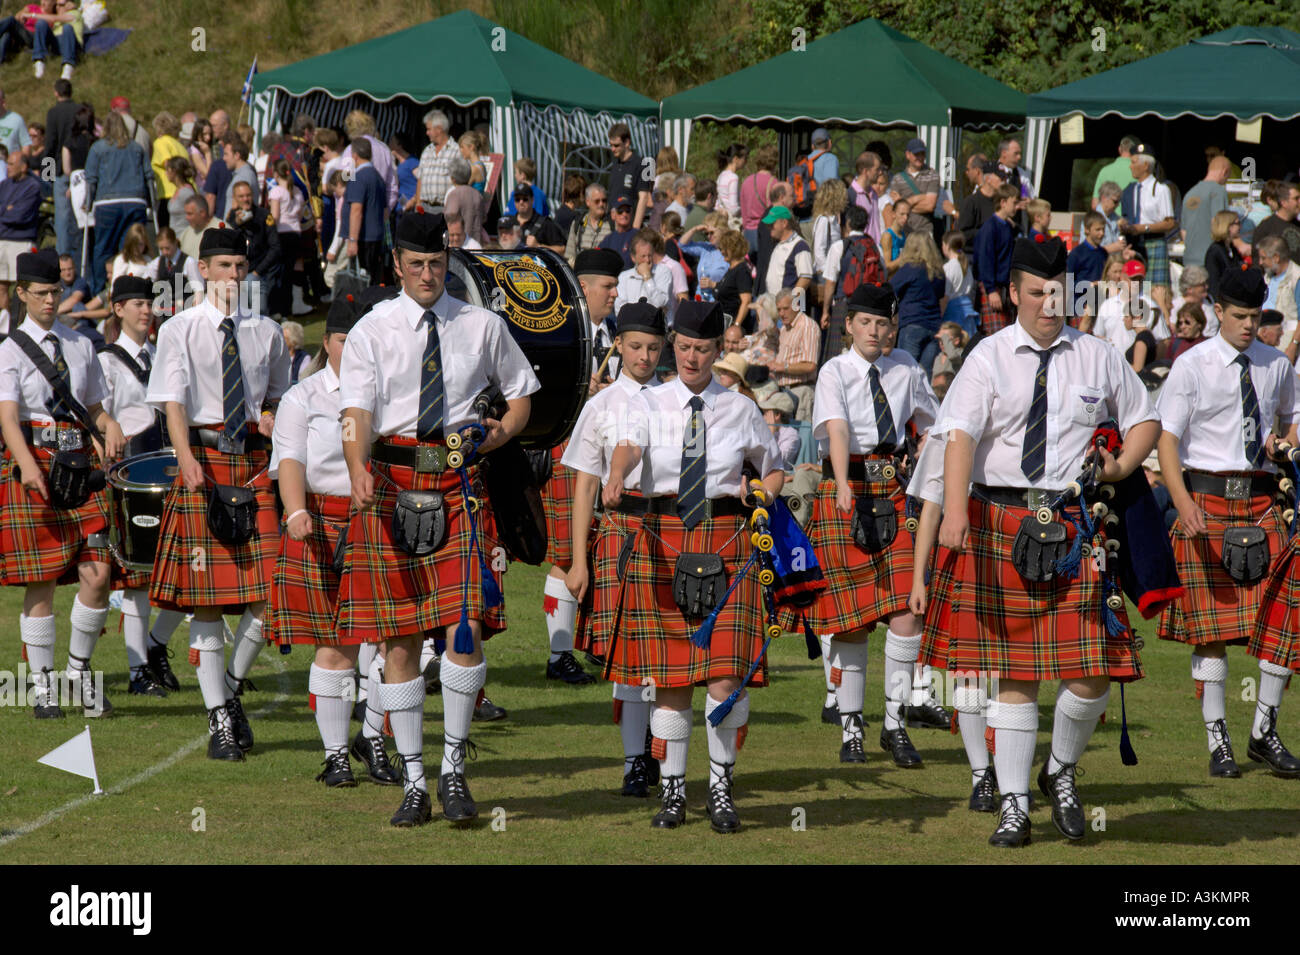 Les cornemuseurs de la compétition à Pitlochry Perthshire Scotland Highland Games Banque D'Images